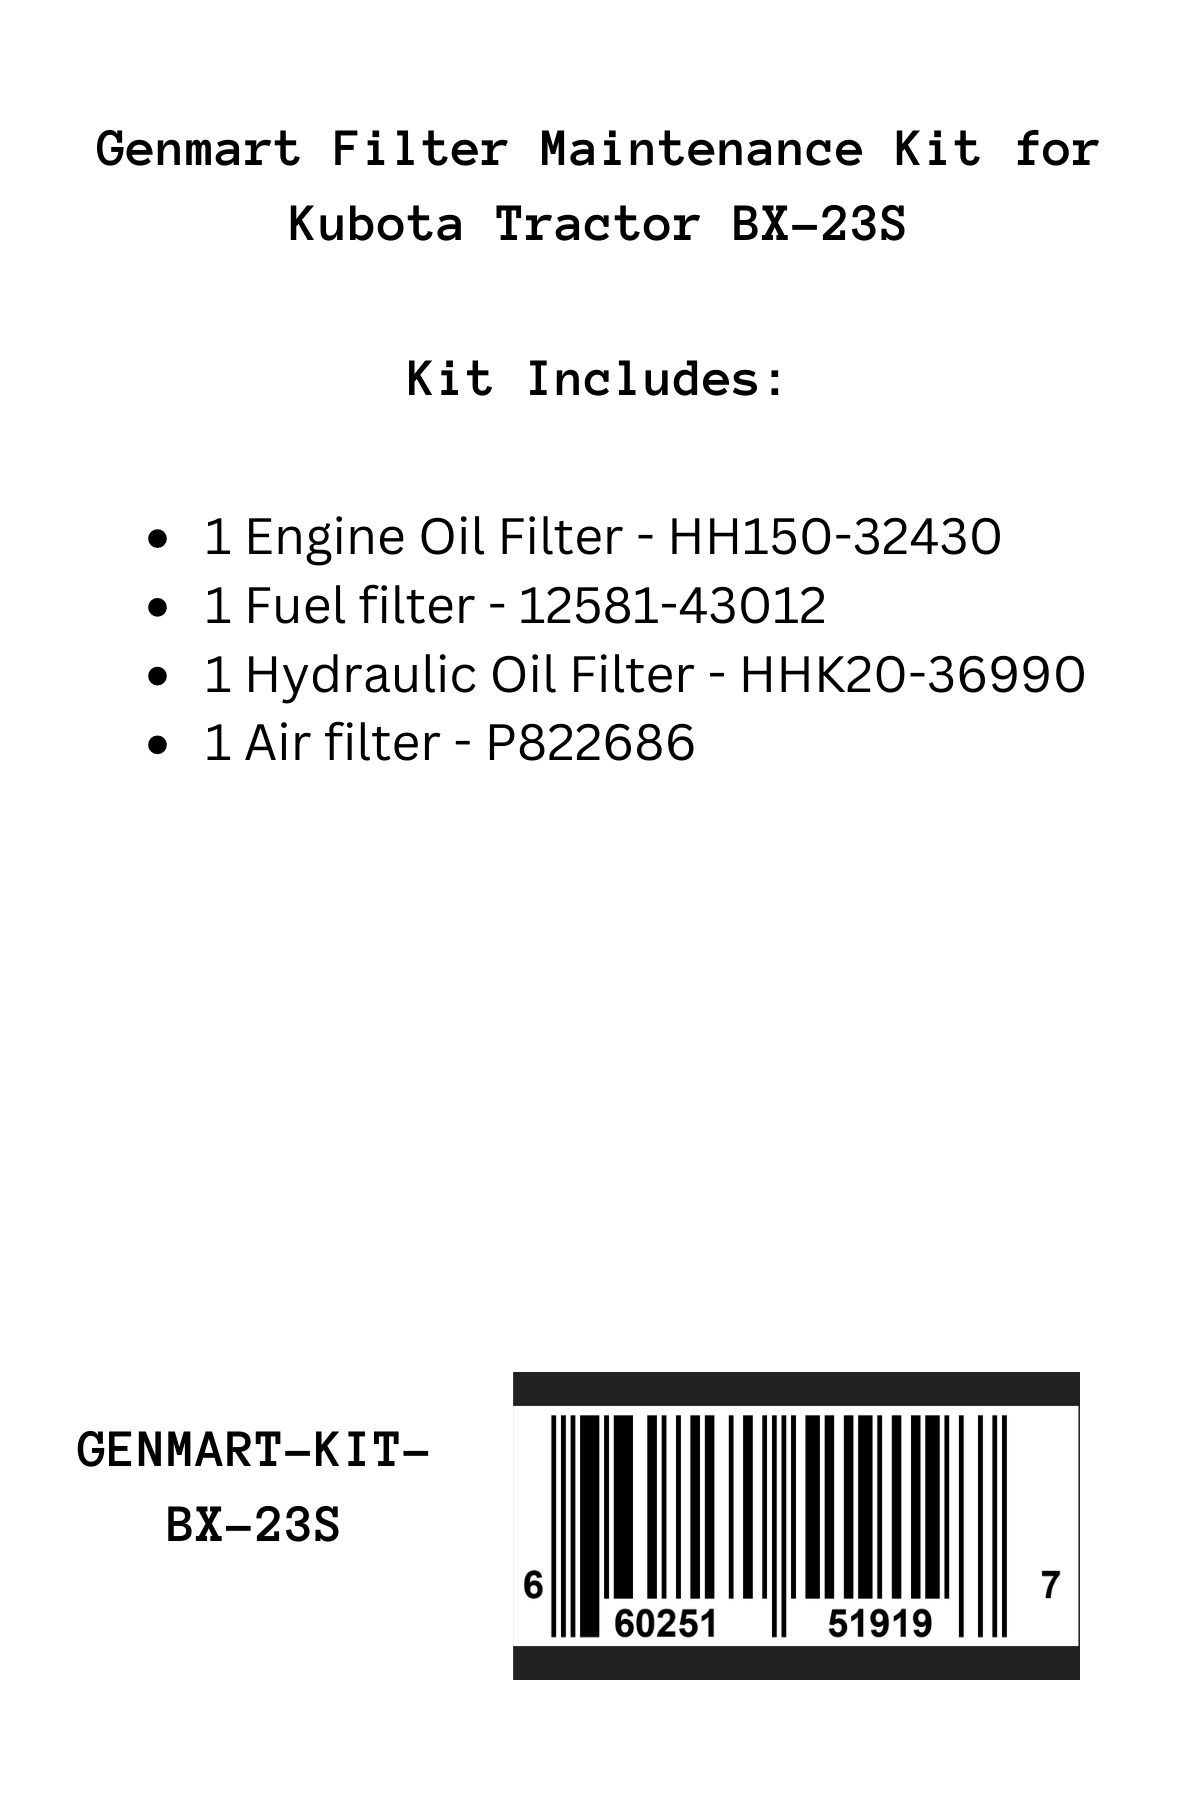 Genmart Maintenance Kit for Kubota Tractor BX-23S